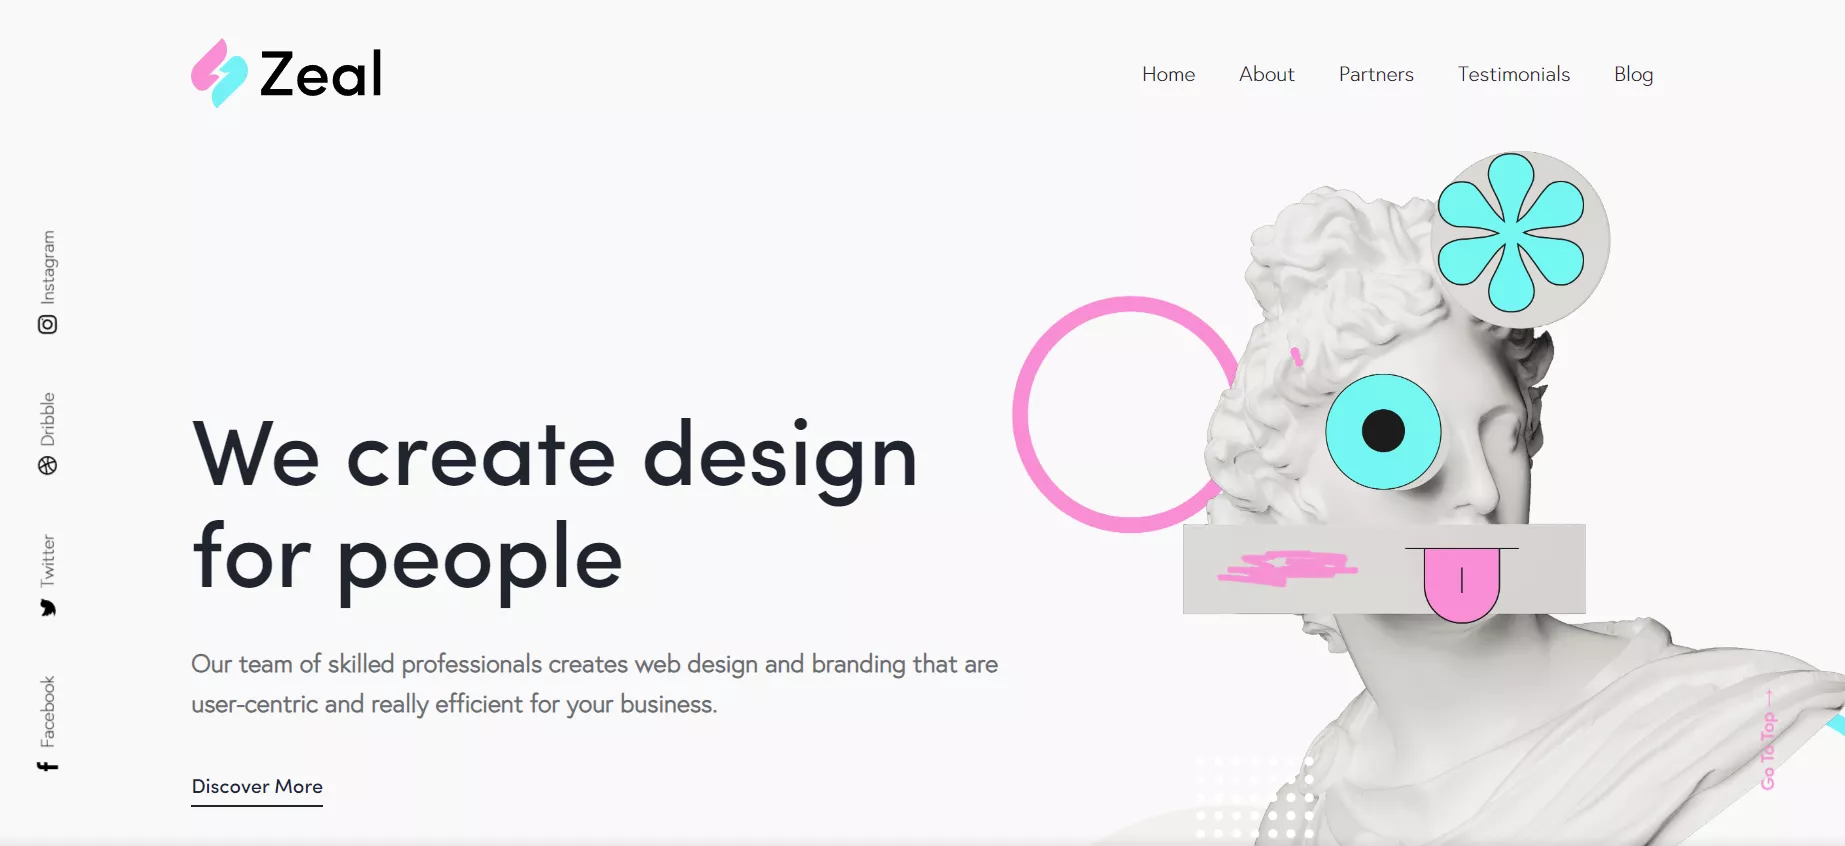 За допомогою сайту ви зможете зробити той дизайн, який відображатиме ідентичність вашого бренду якнайкраще